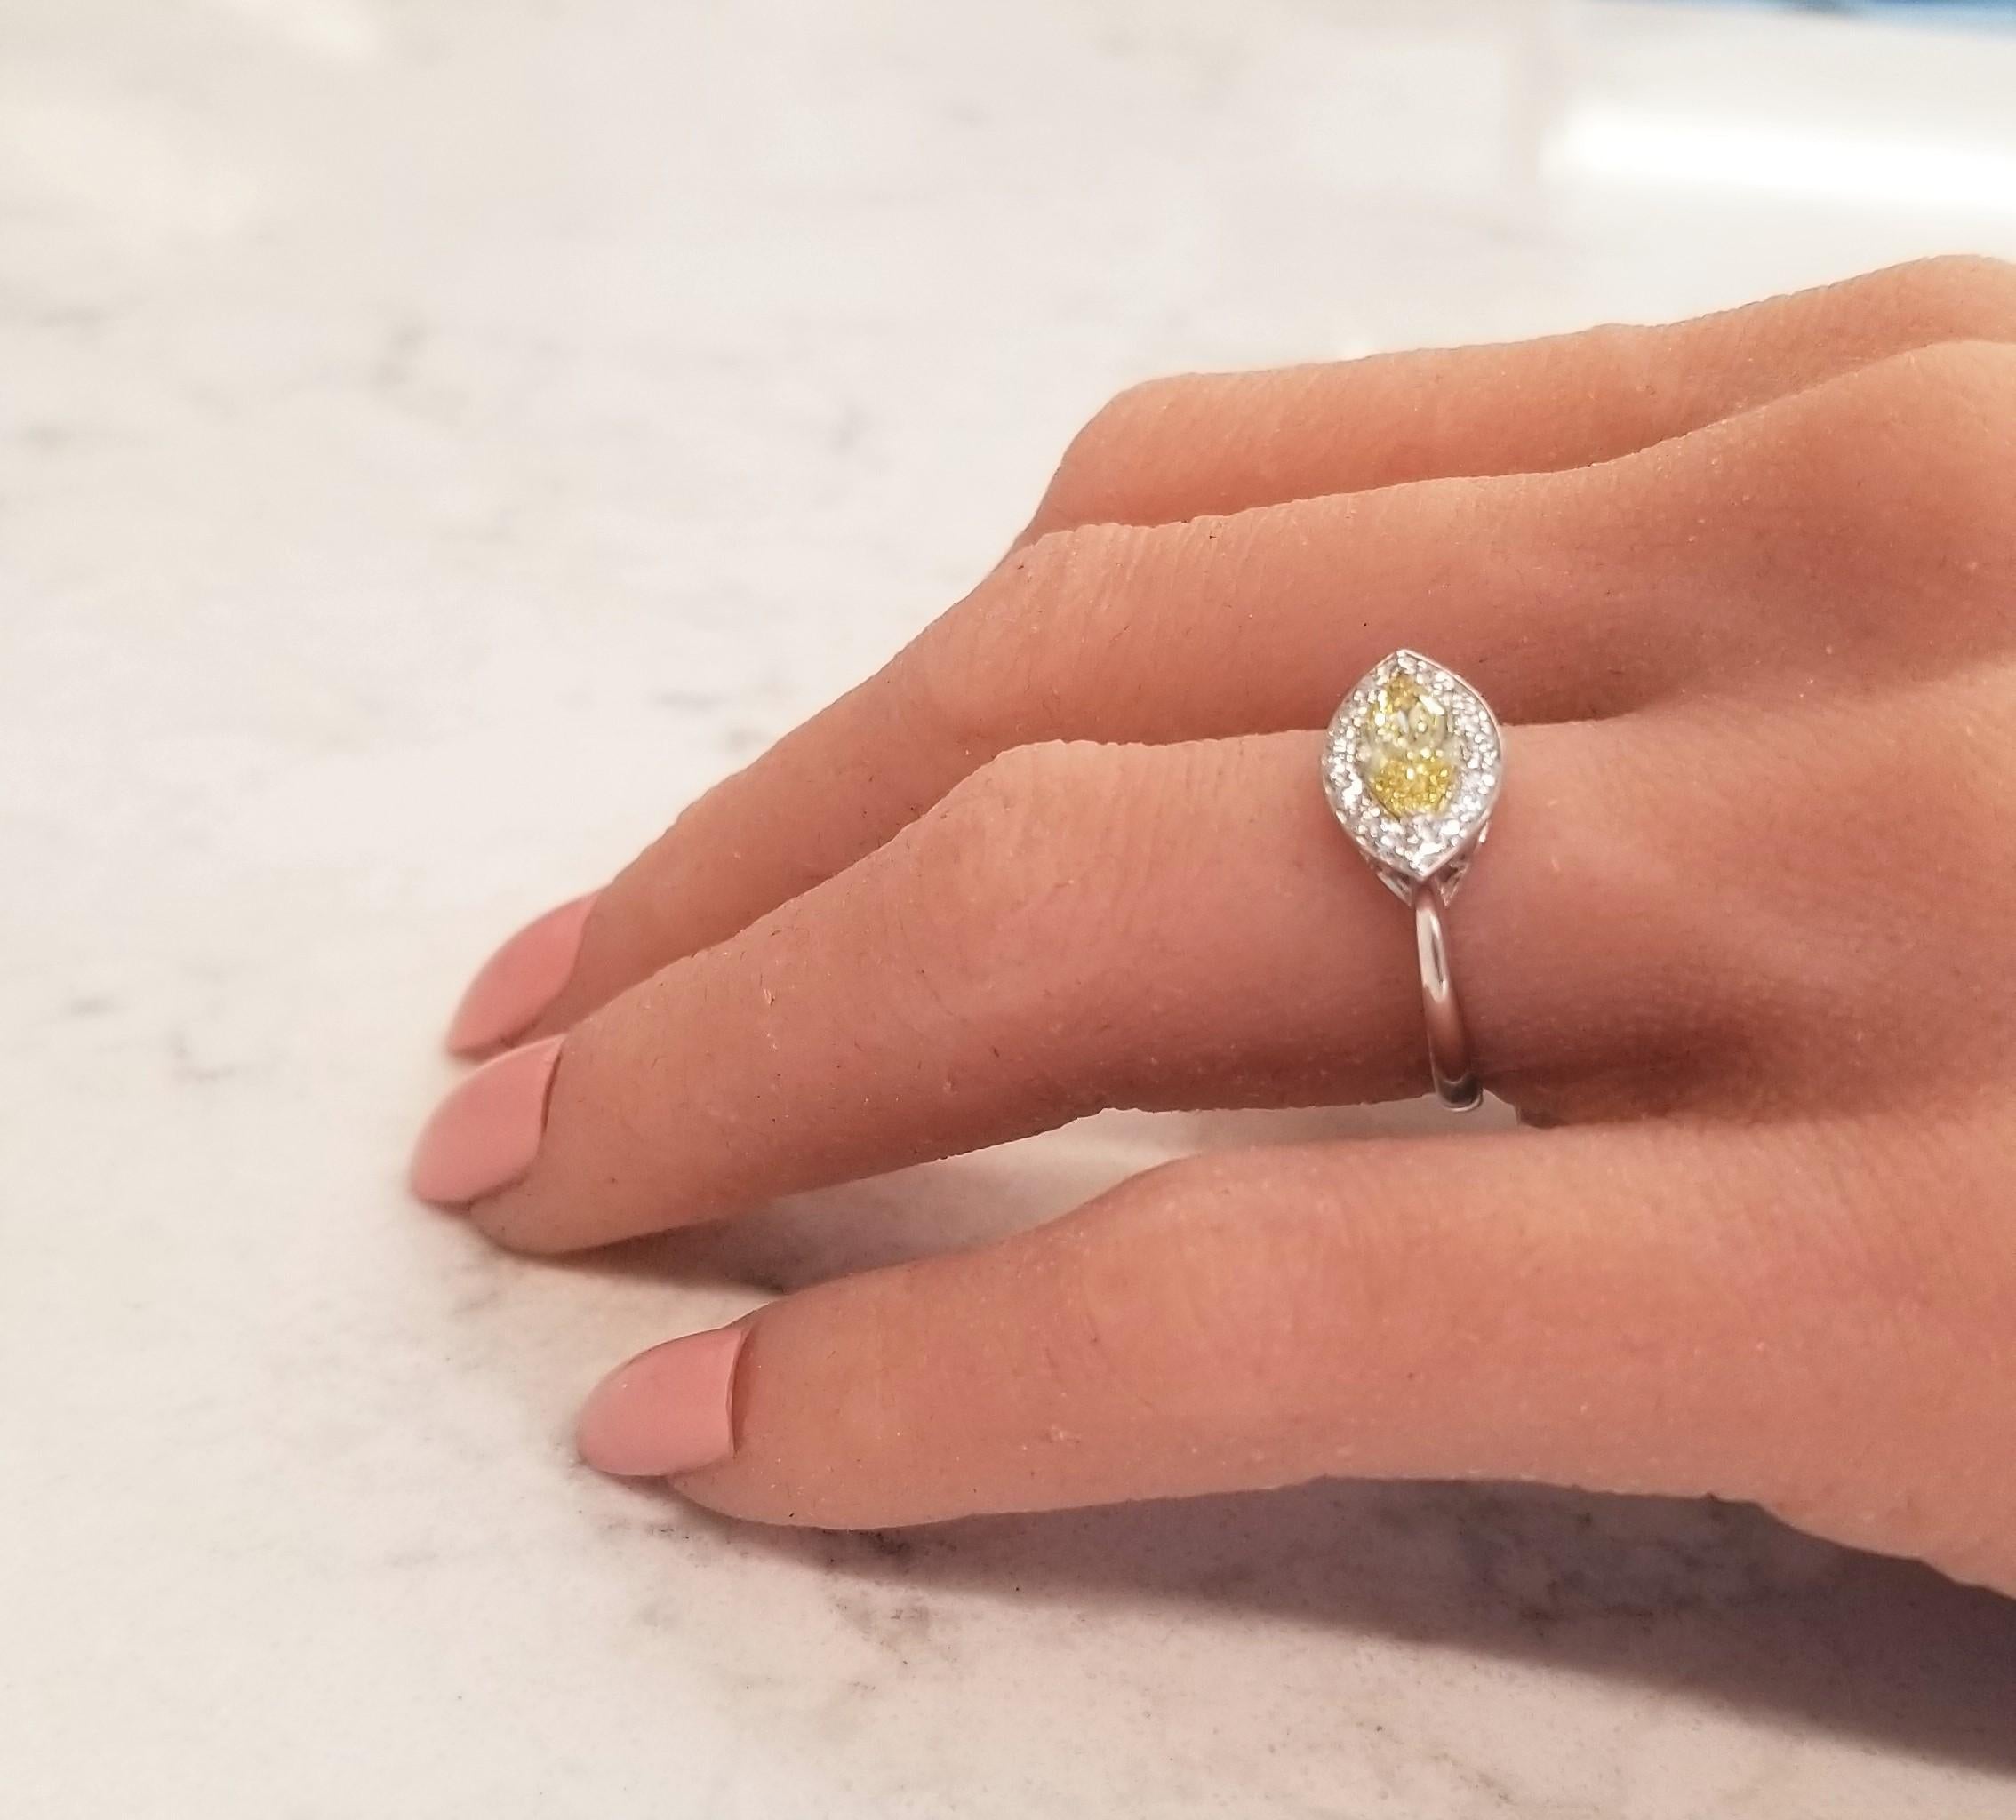 Dies ist ein Ring mit einem wunderschönen natürlichen, intensiv gelben Diamanten und einem außergewöhnlichen Design. Der Höhepunkt dieses Rings ist die Ost-West-Ausrichtung eines intensiv gelben Fancy-Diamanten. Mit einem Gewicht von 0,69 Karat,